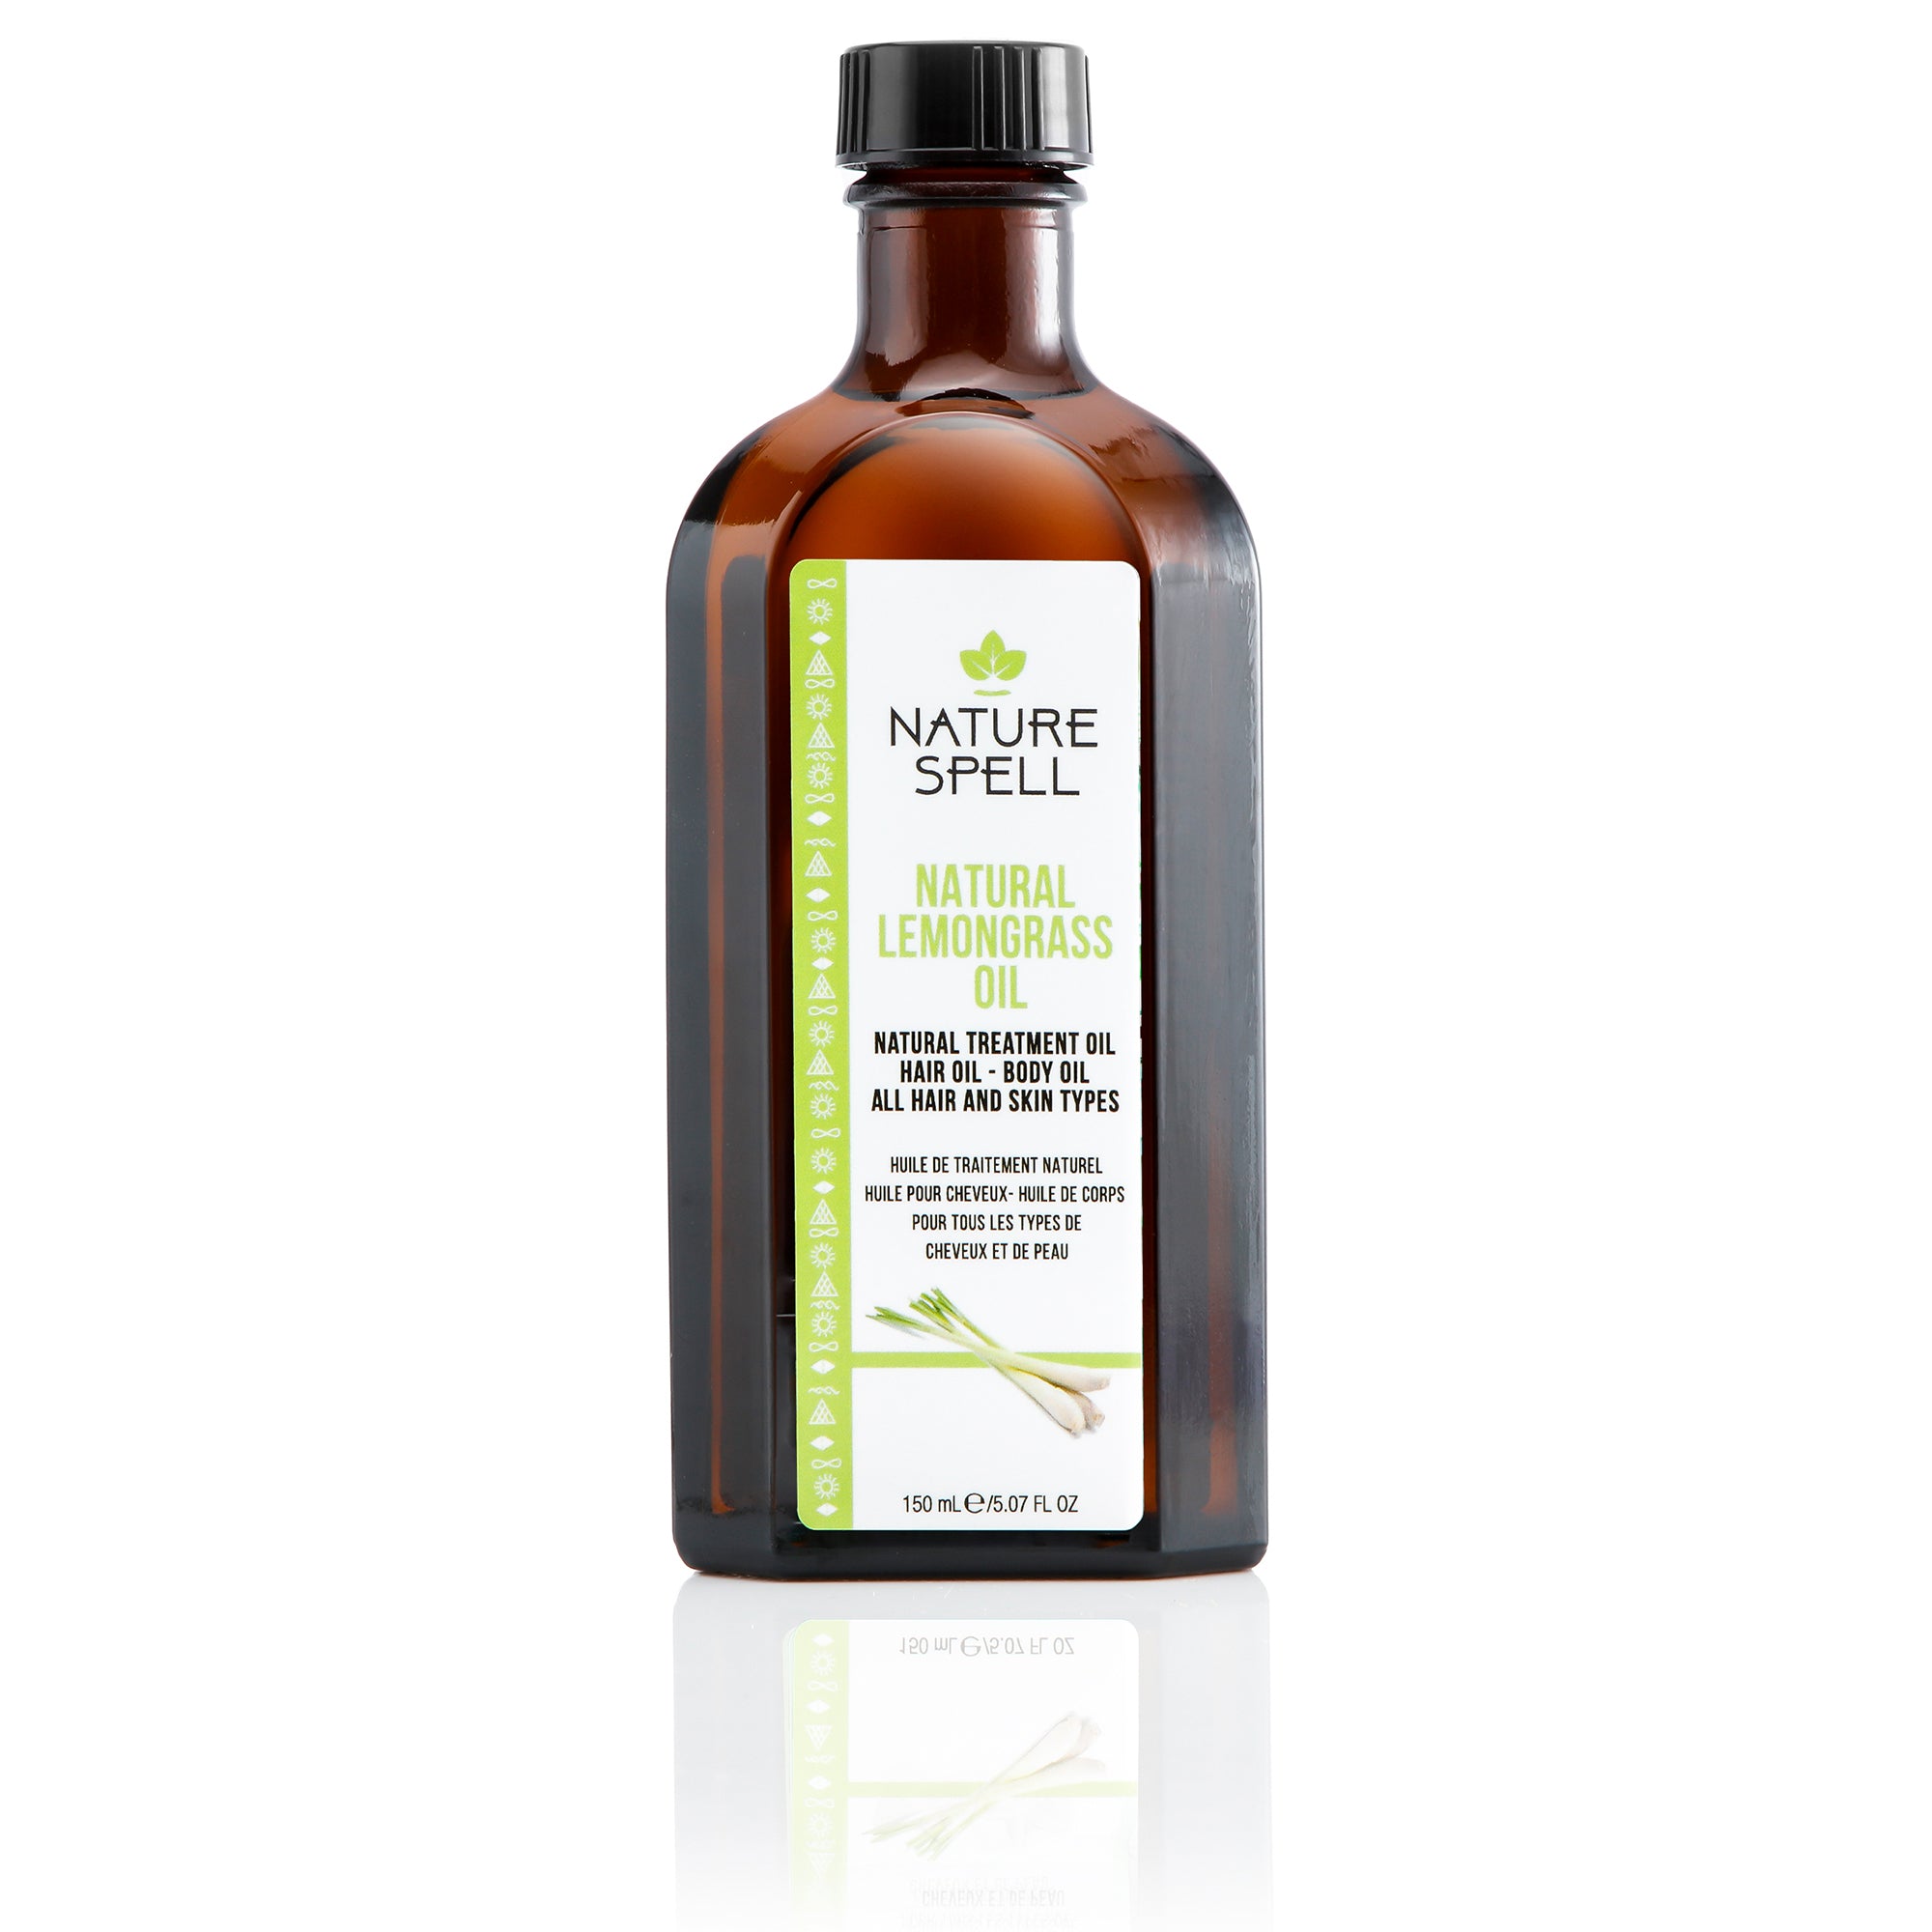 Lemongrass Oil For Hair & Body